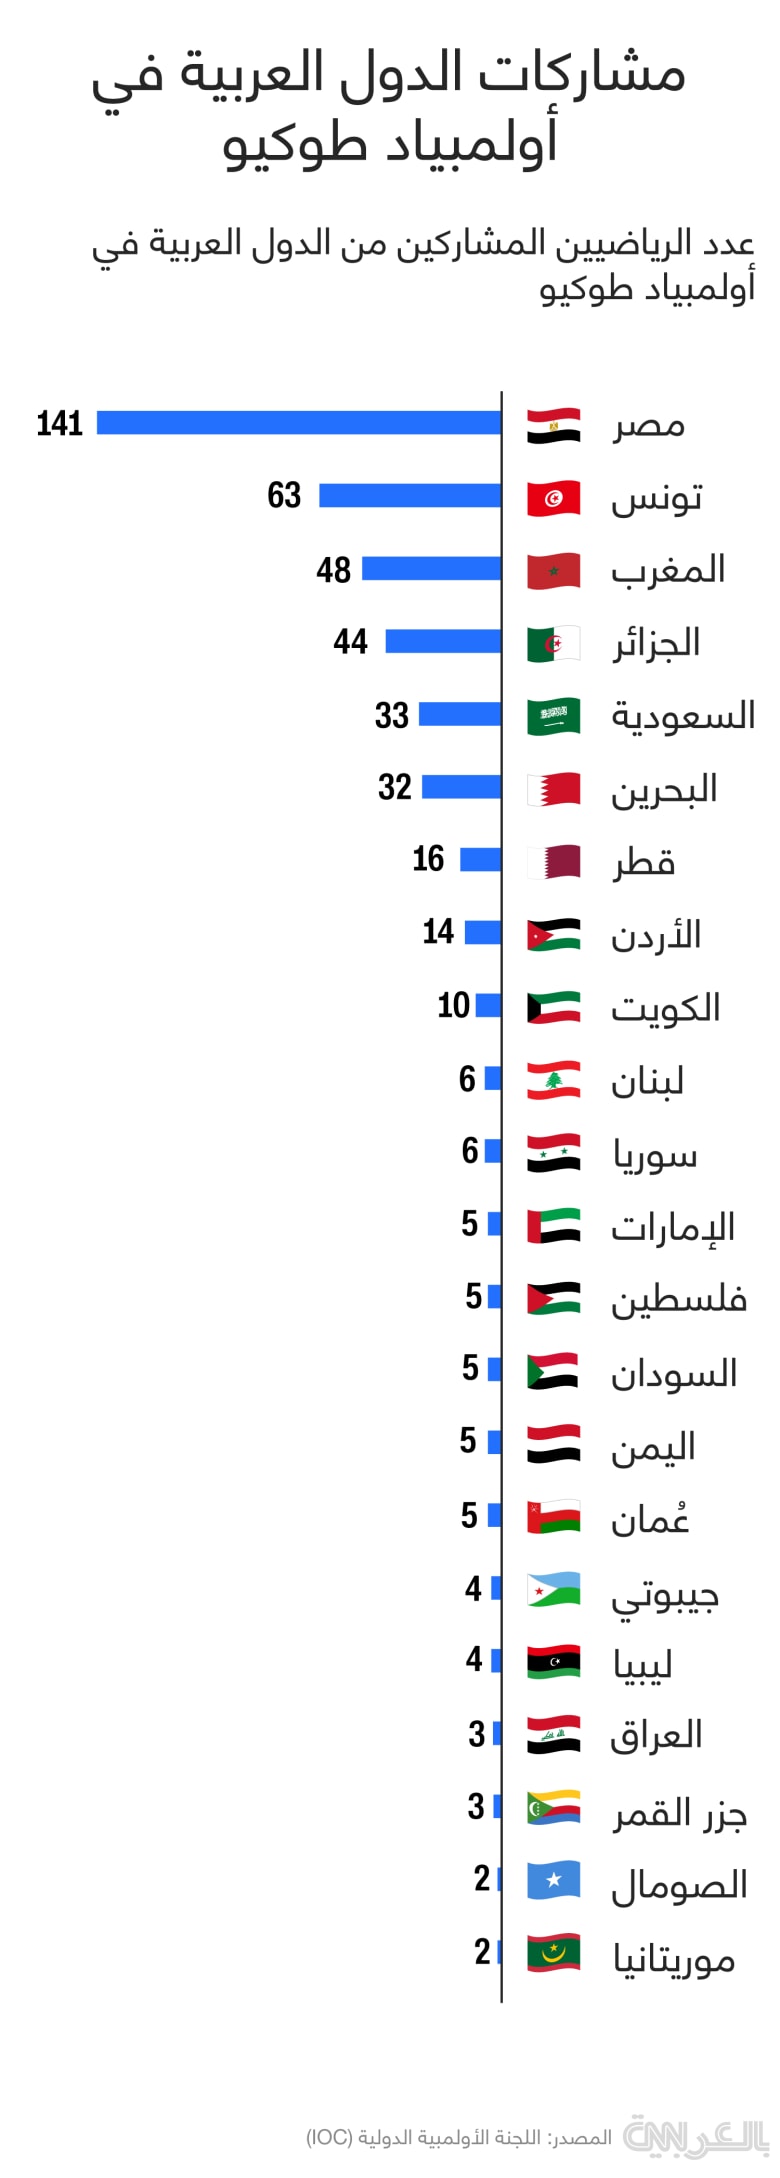 كم عدد المصريين في السعودية